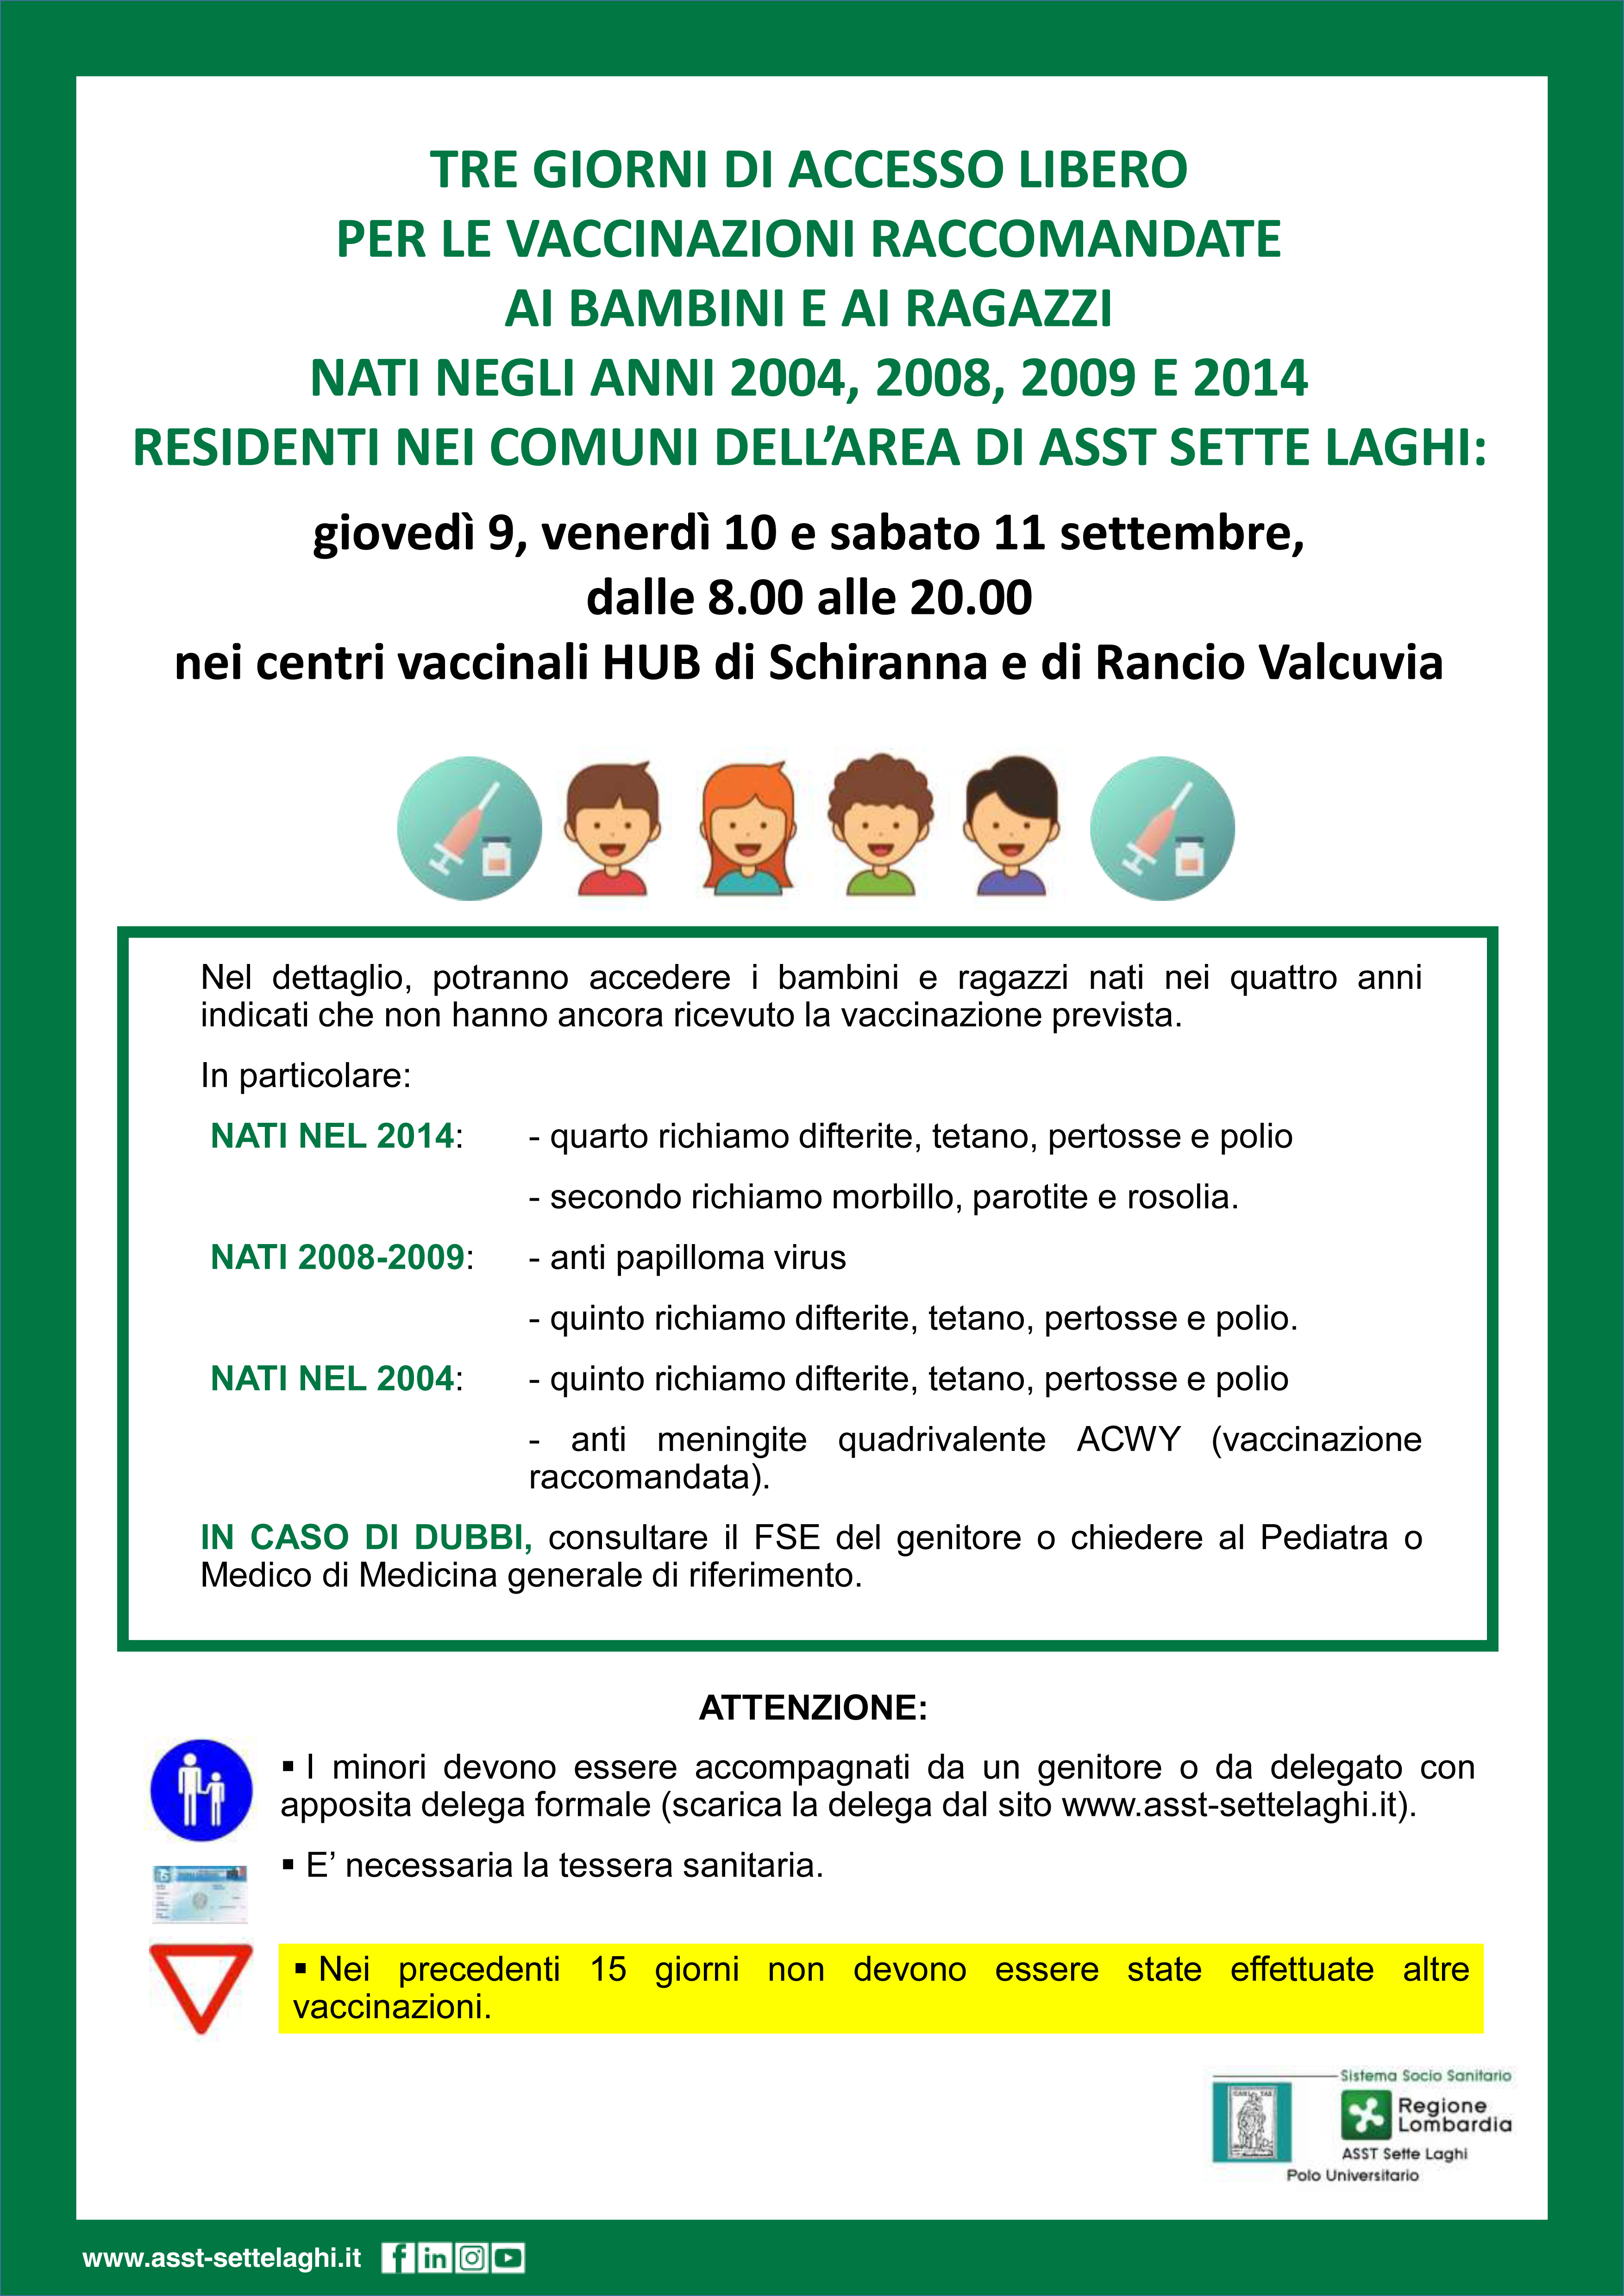 TRE GIORNI DI ACCESSO LIBERO PER LE VACCINAZIONI RACCOMANDATE 2004-2008-2009-2014